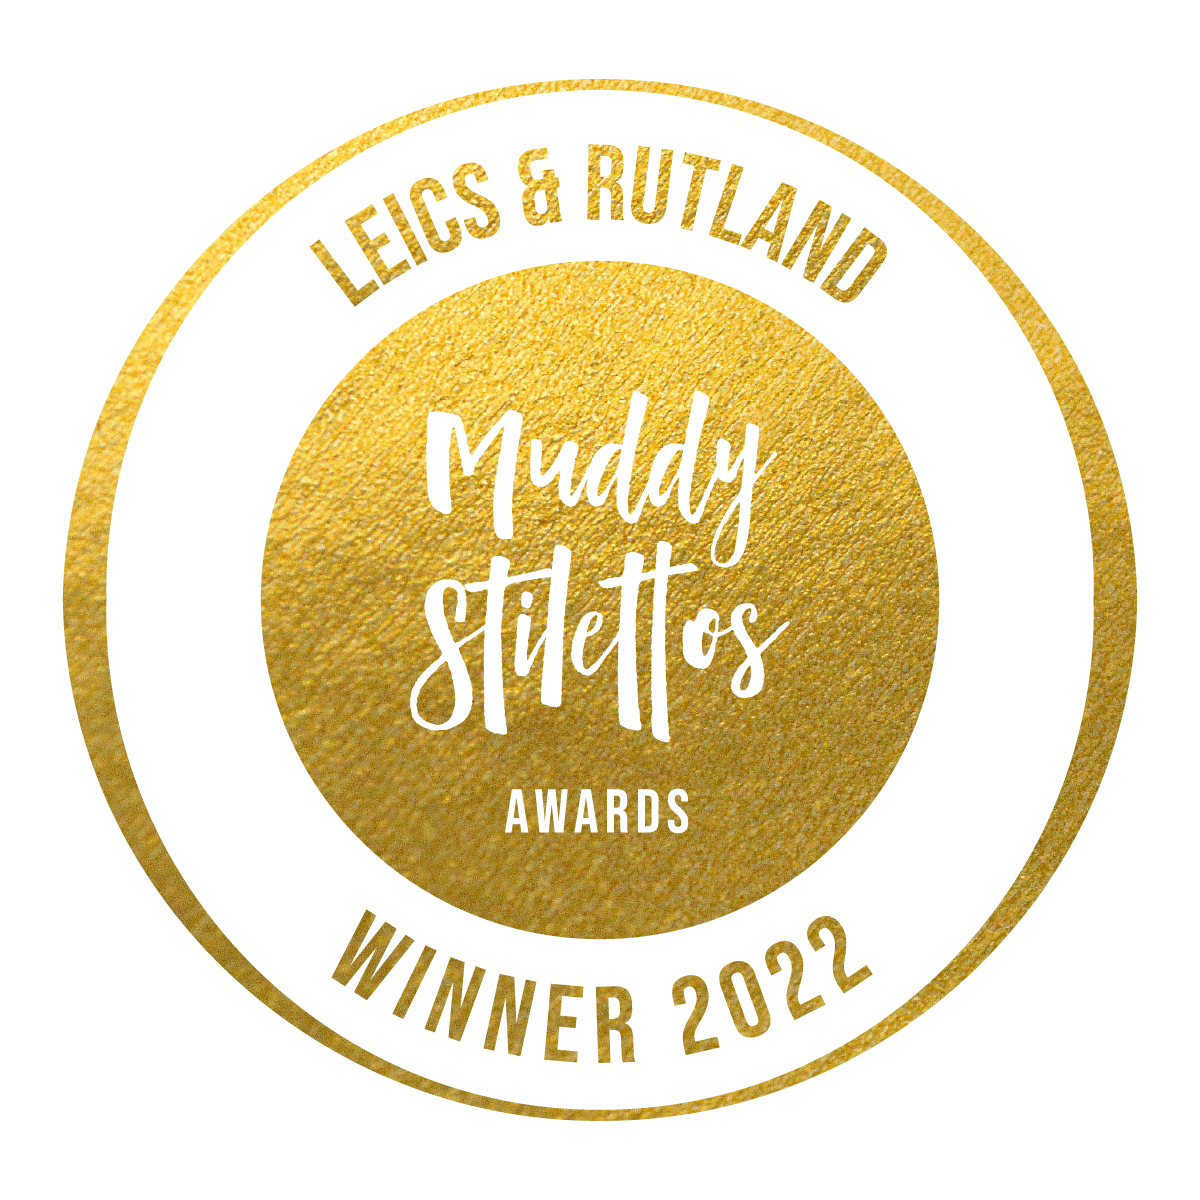 Muddy Stilettos Winner